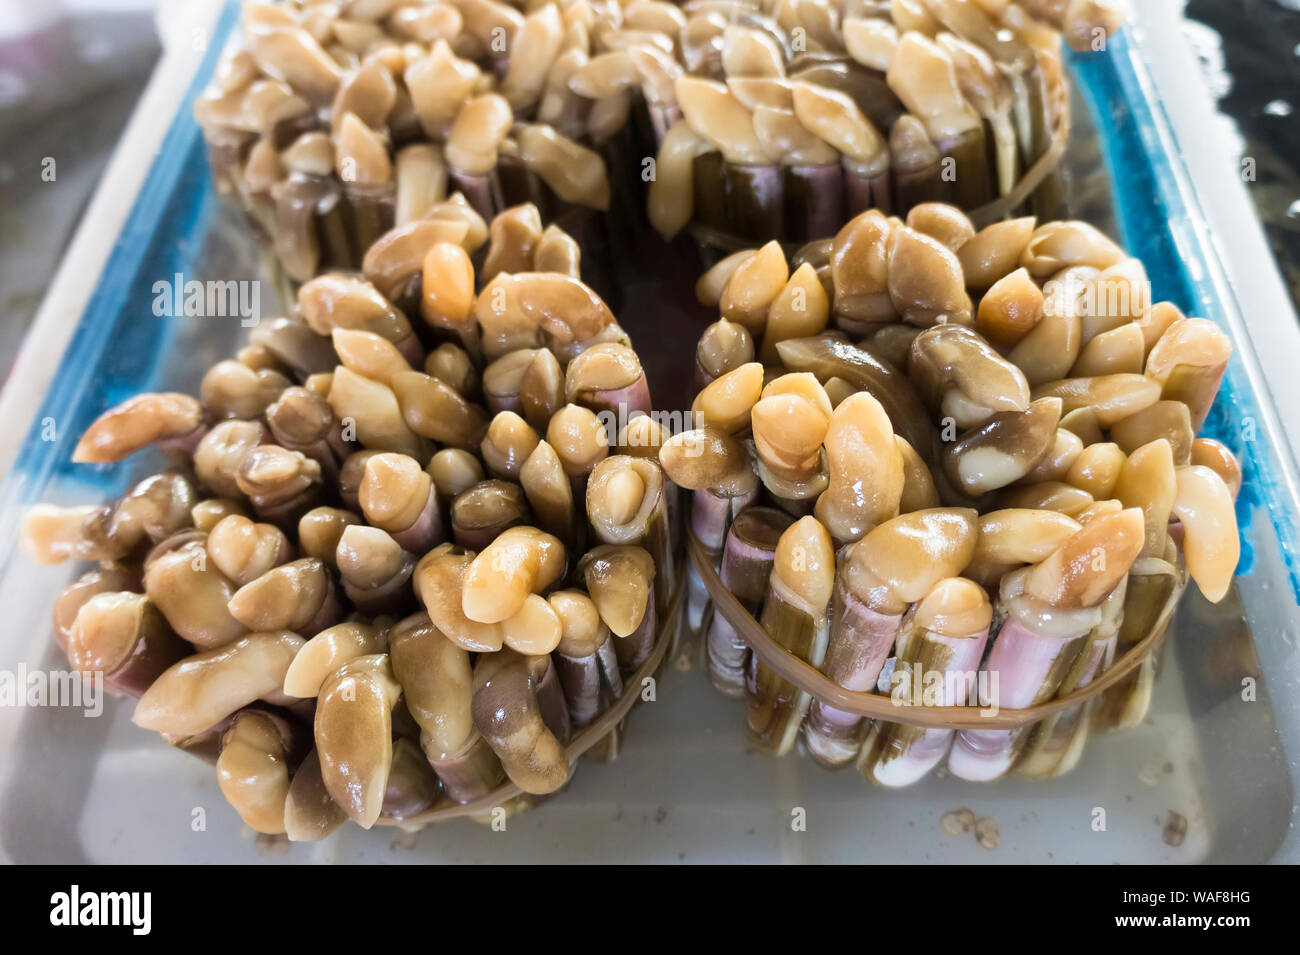 mollusks at a local food market. Hainan, China Stock Photo